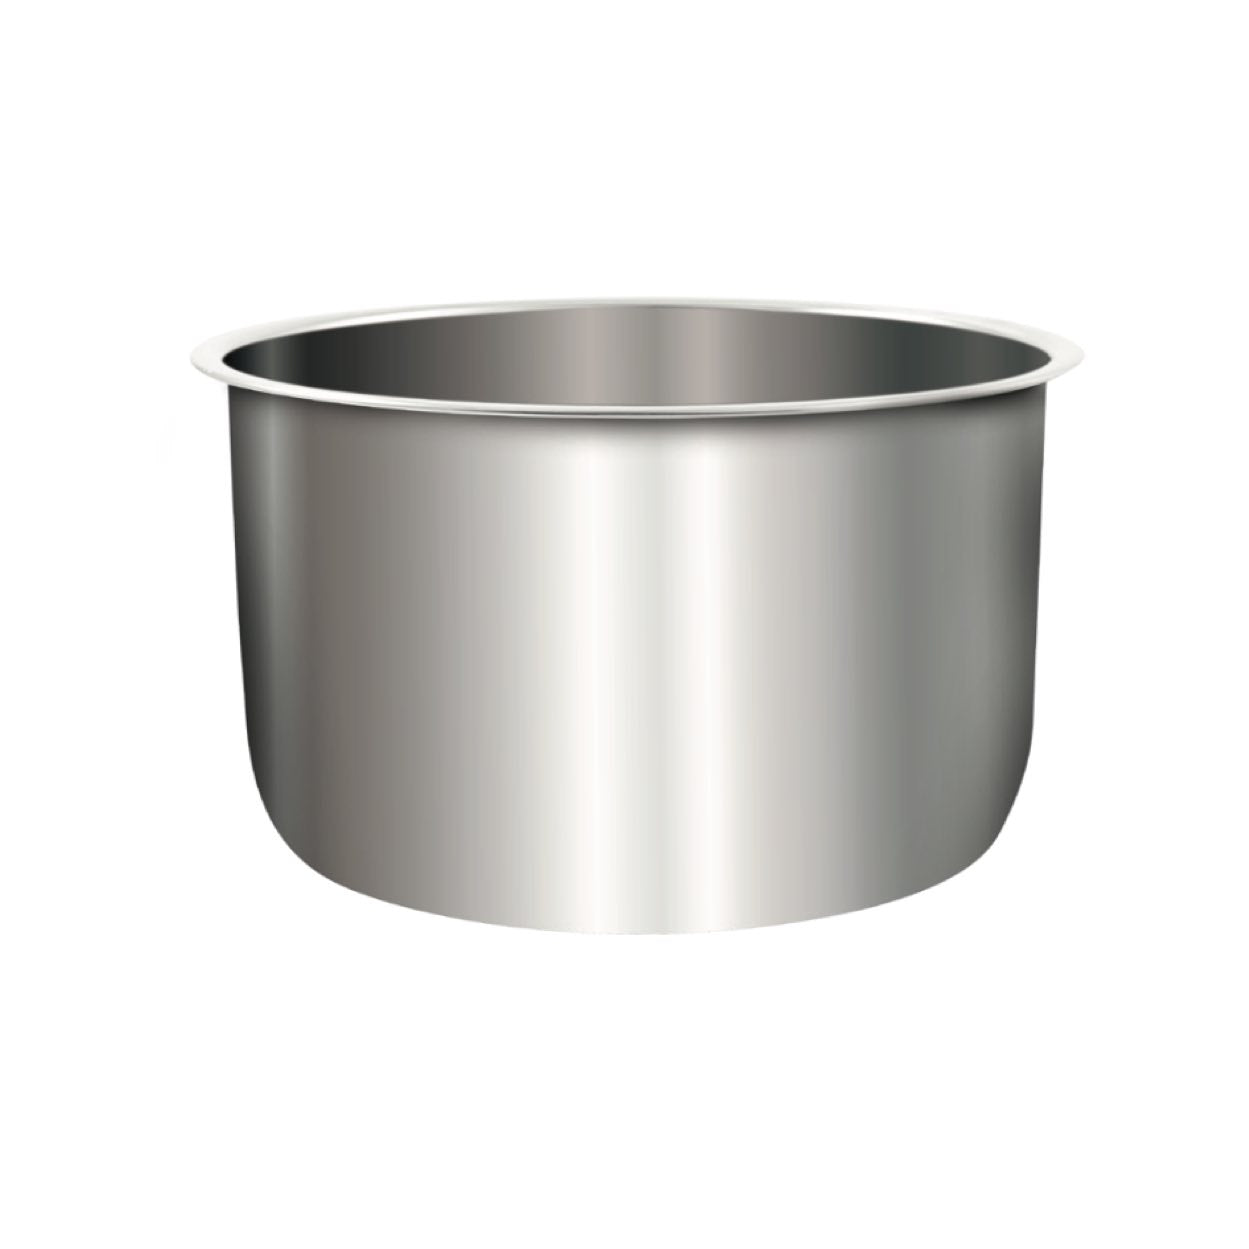 BM-DGW60280A Duo Stainless Steel Pot